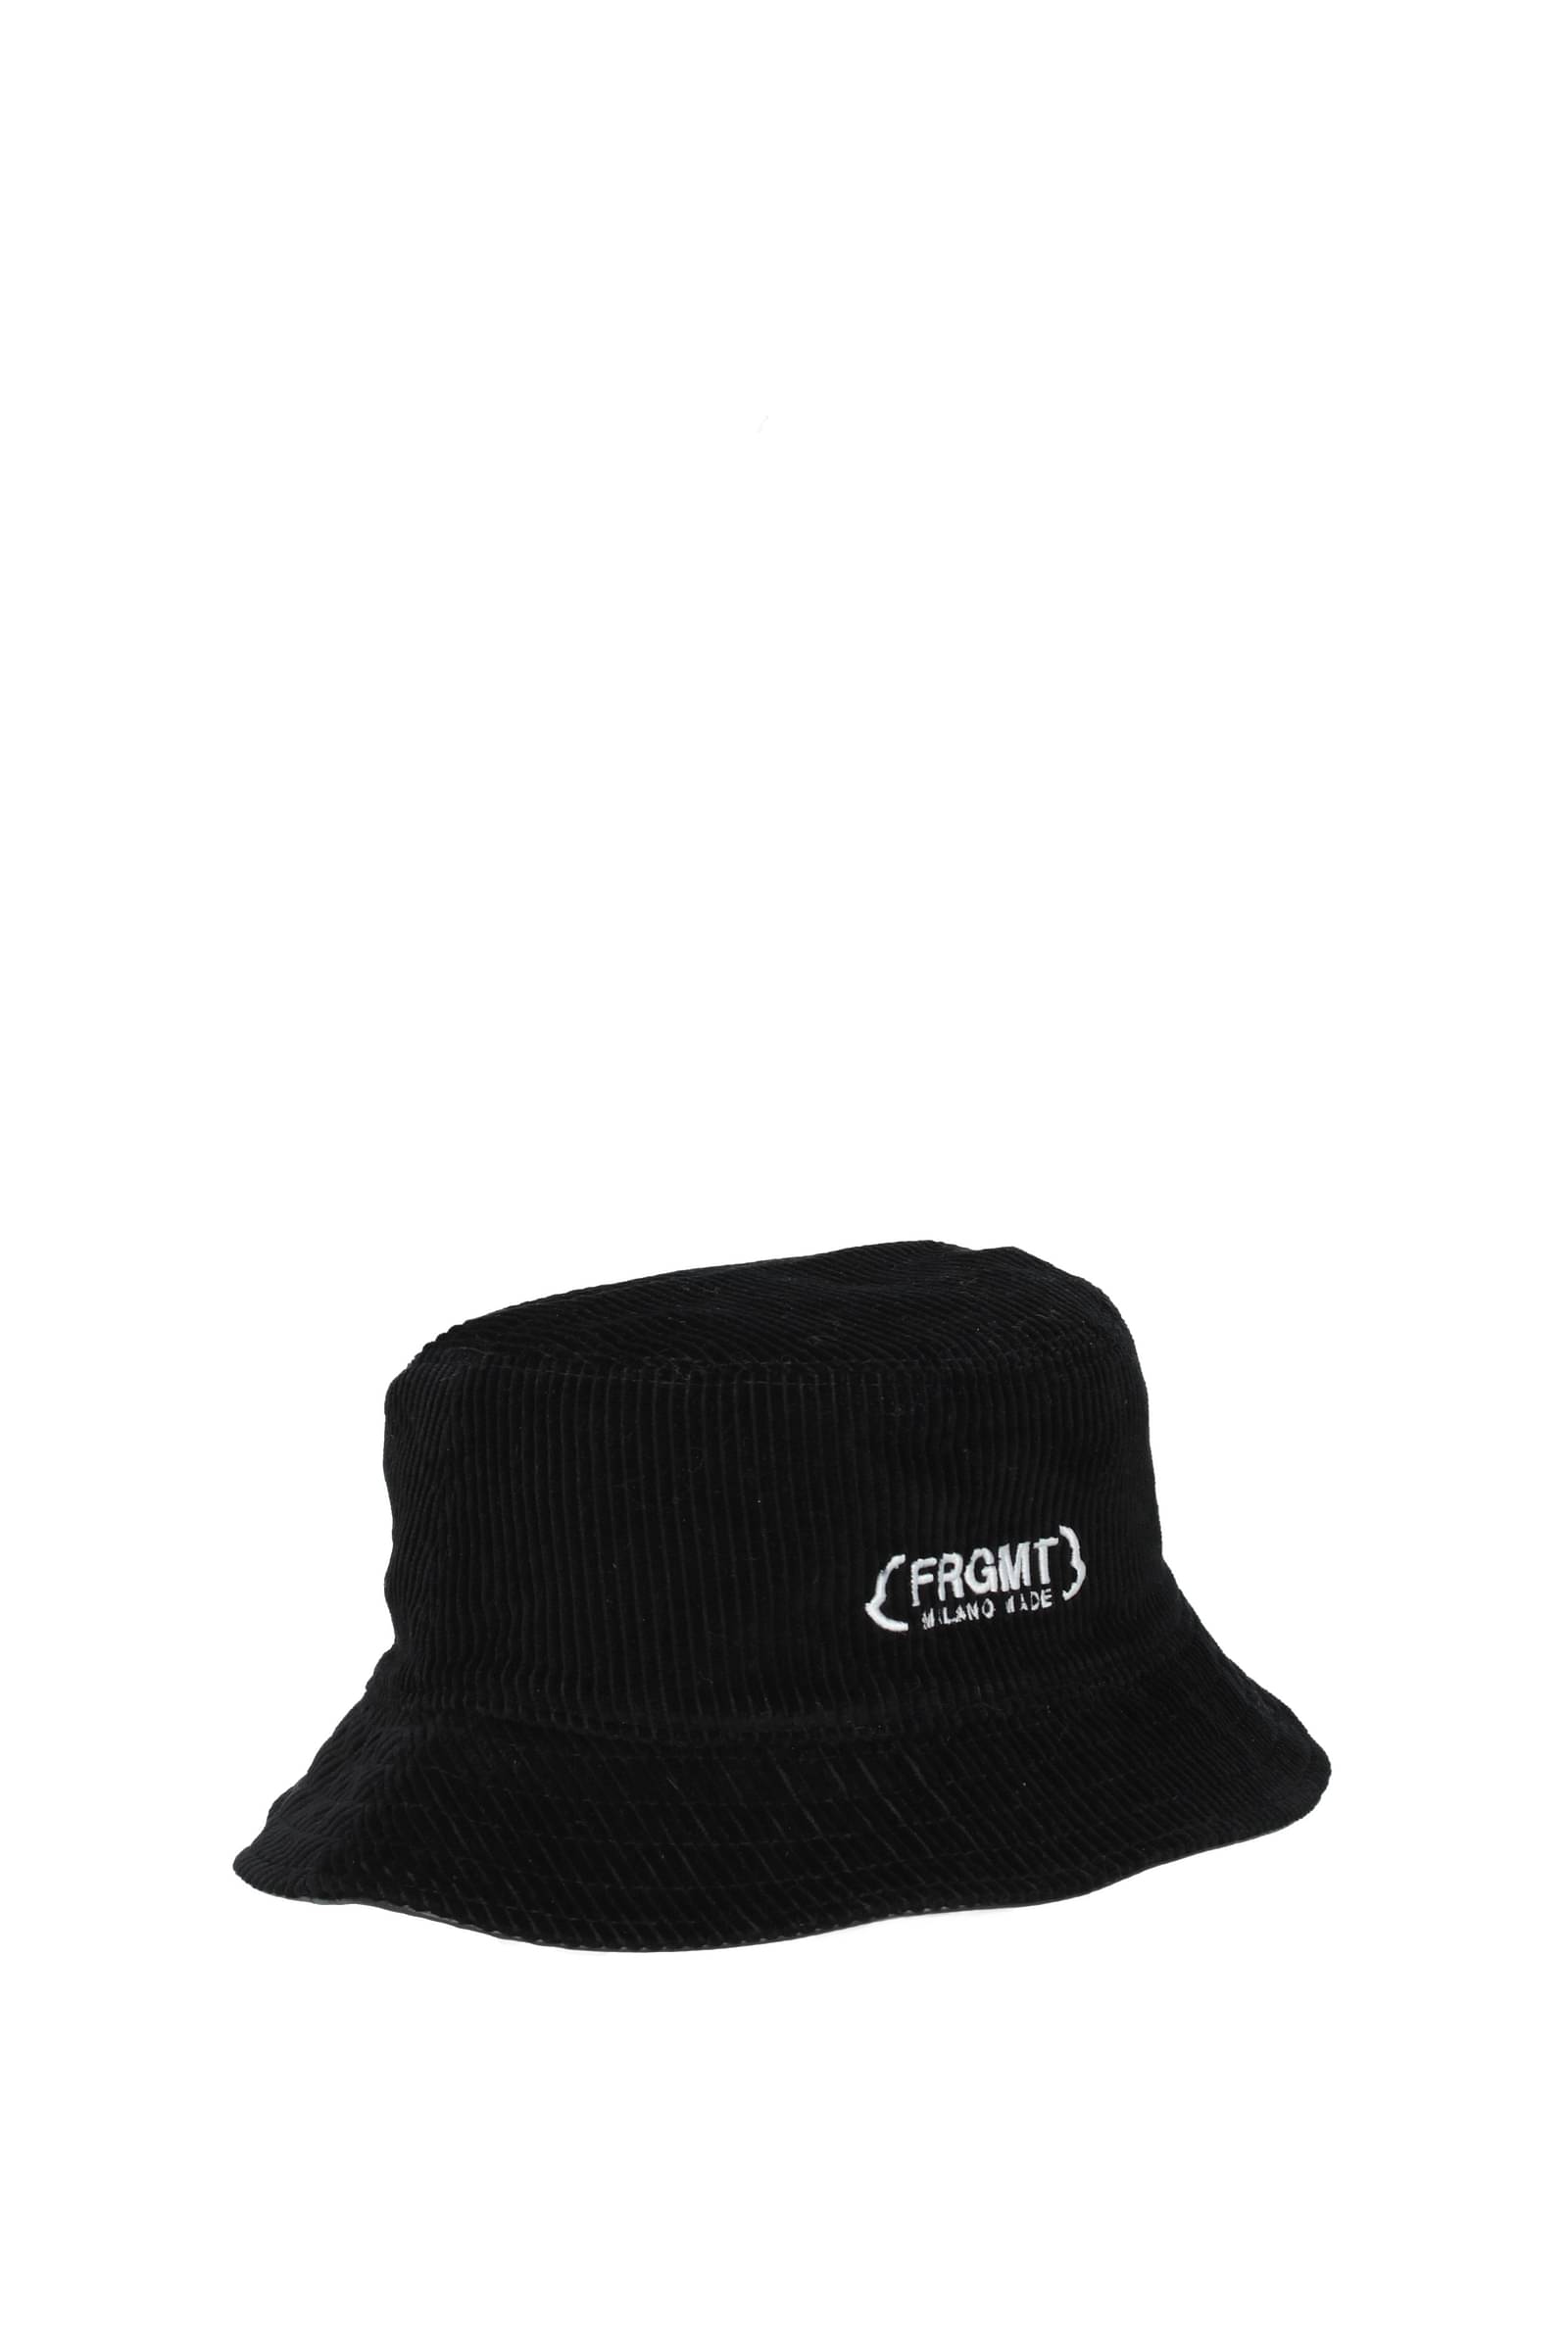 Moncler 帽子frgmt 男士3B00006M2363999 棉花黑色黑色138€